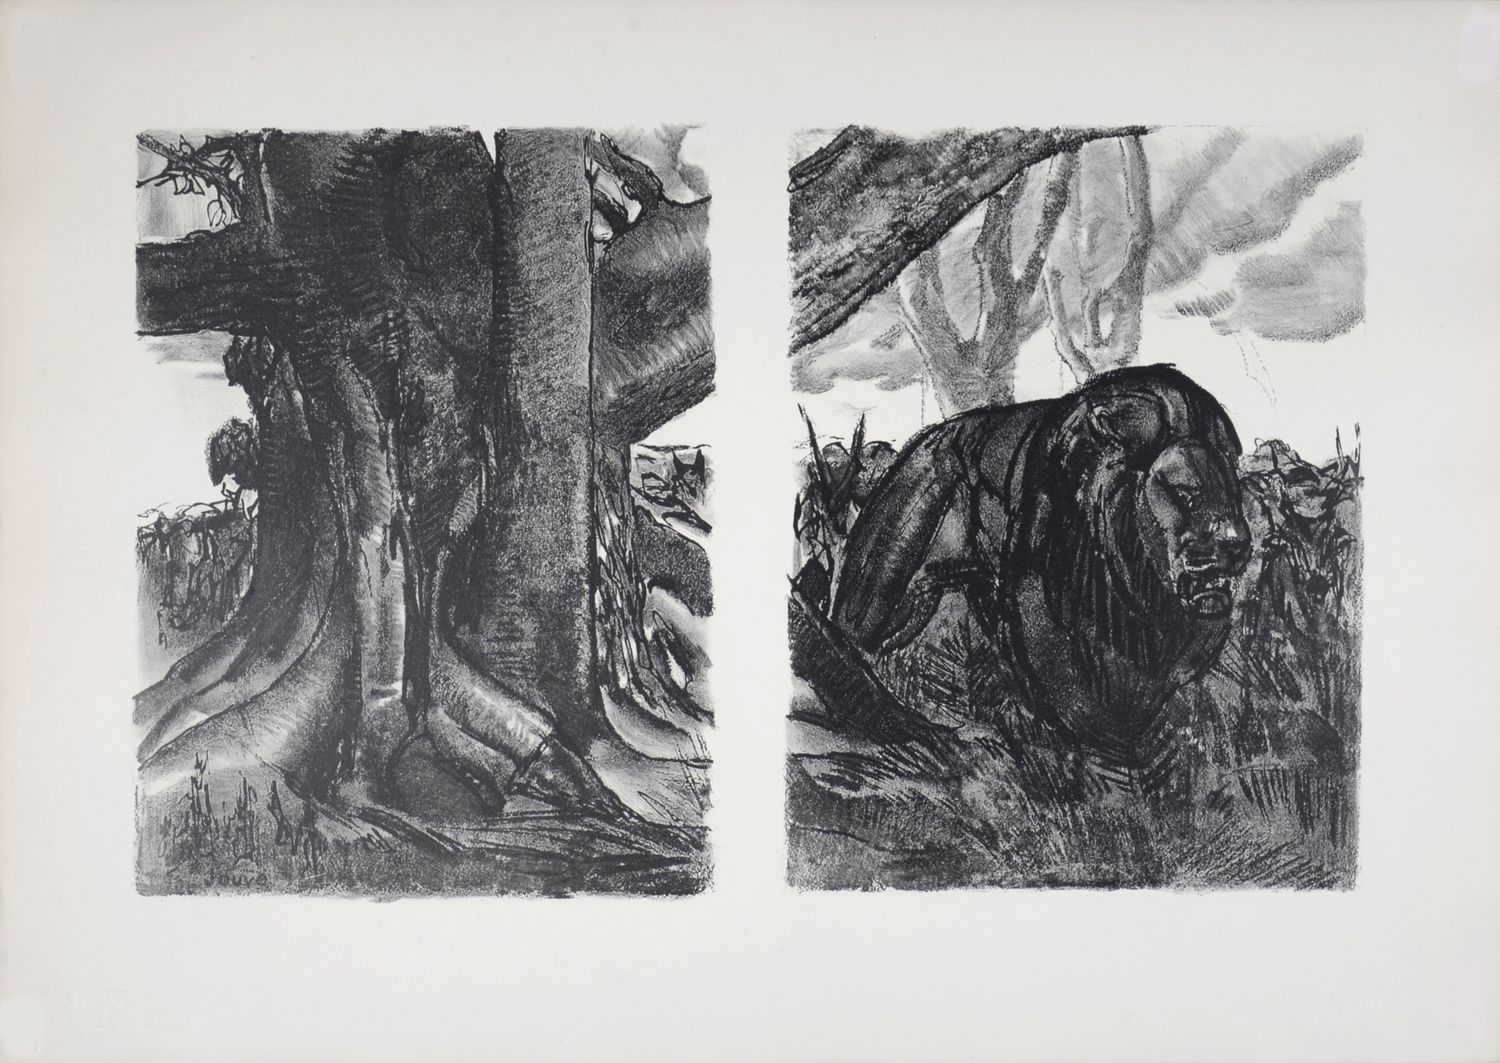 Paul JOUVE 保罗-茹维 (1878-1973)

狮子》，1934年

BFK Rives纸上的原版石版画，左下方有签名，有水印BFK Rives

&hellip;